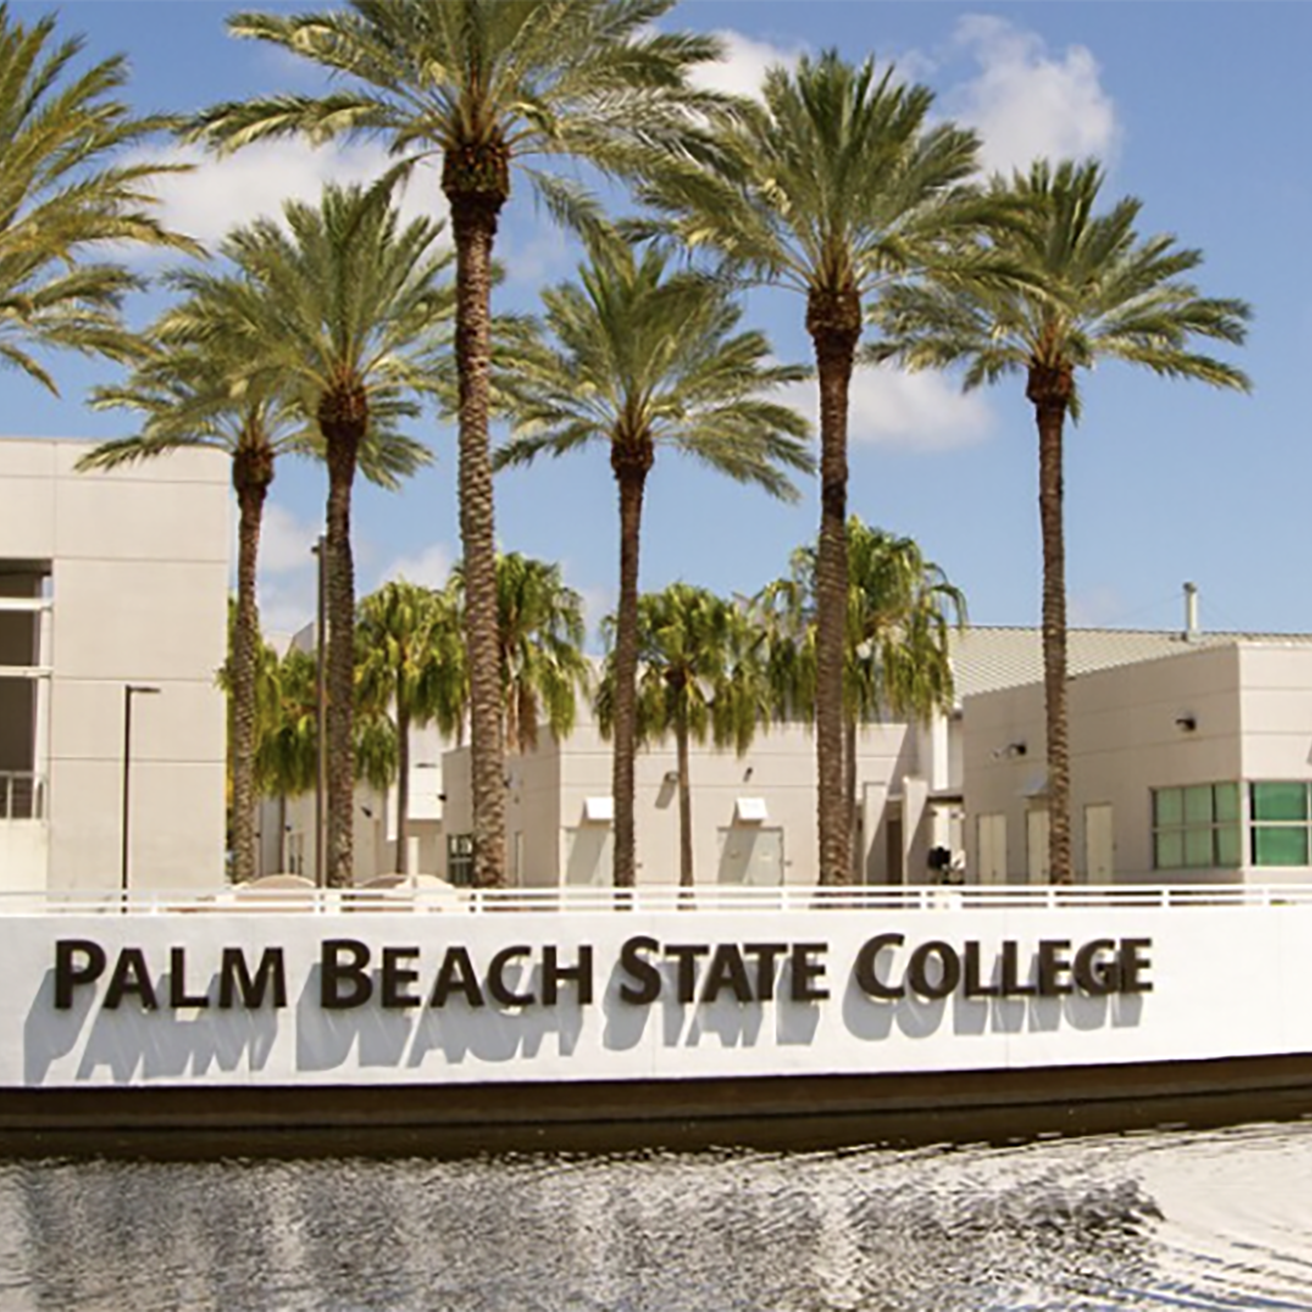 Palm Beach State College campus